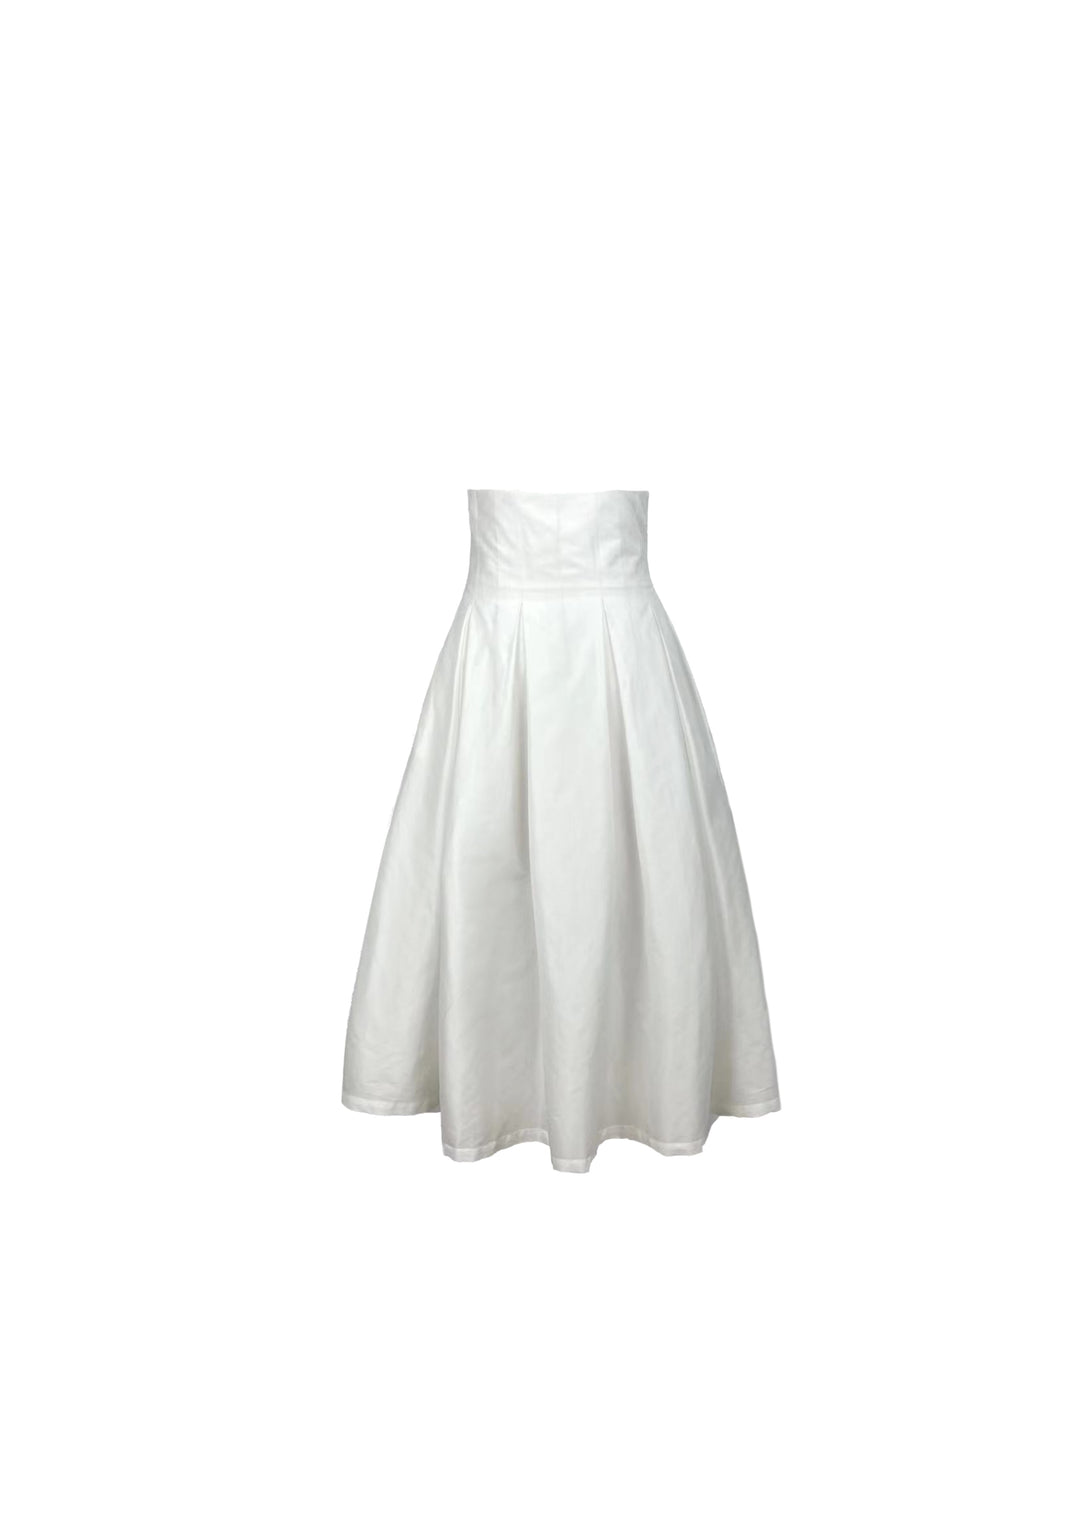 Pleated mid-length half-skirt